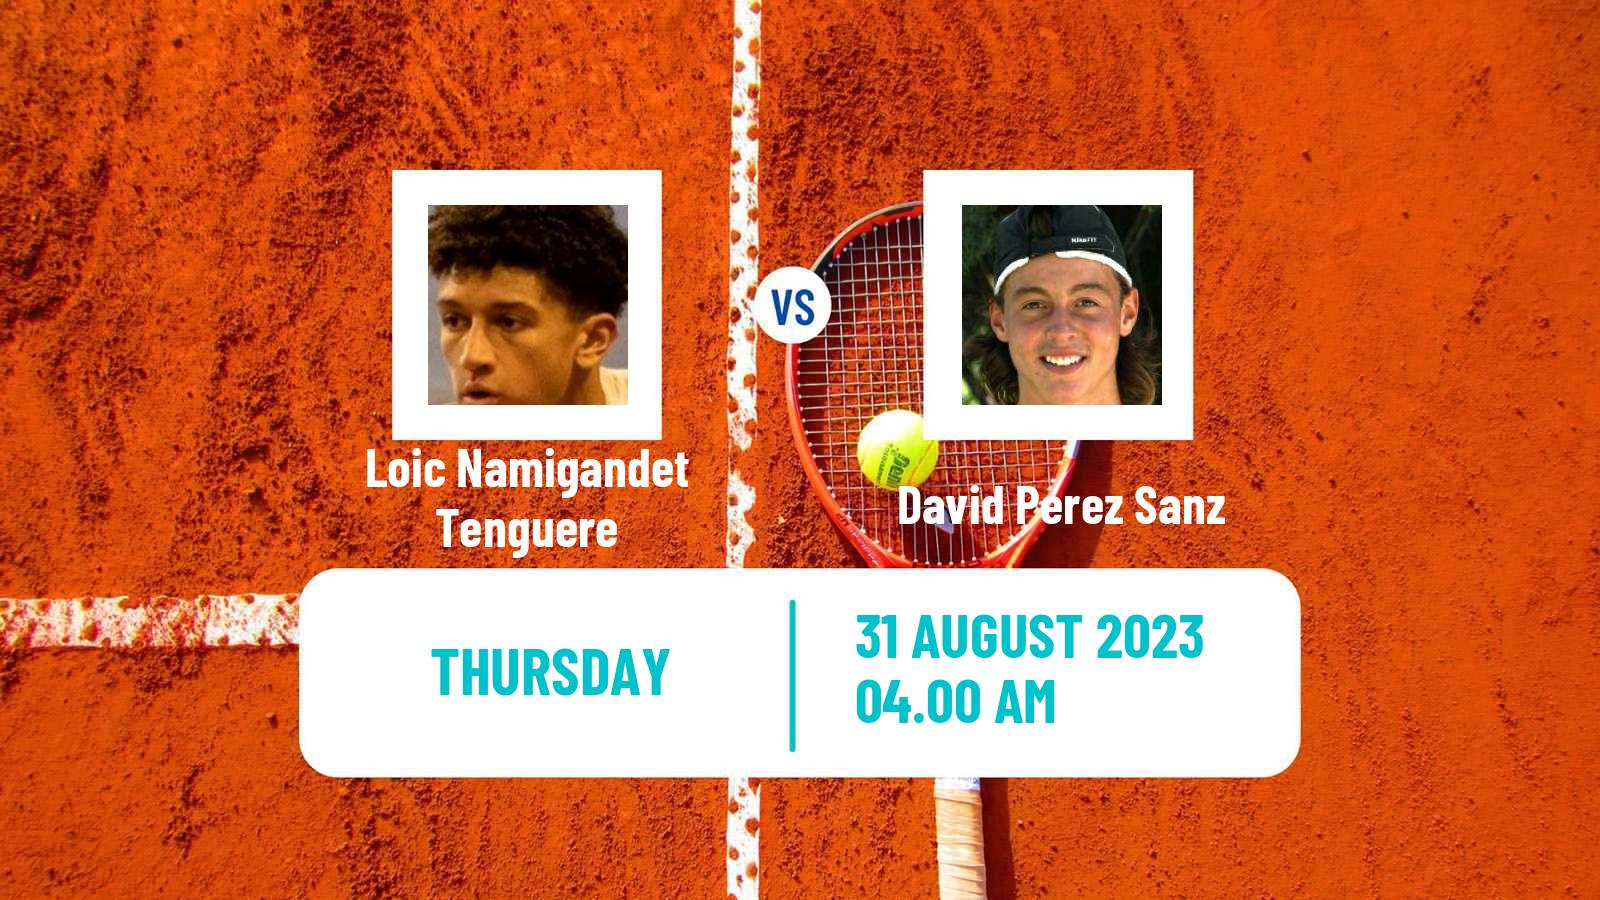 Tennis ITF M25 Idanha A Nova 2 Men Loic Namigandet Tenguere - David Perez Sanz